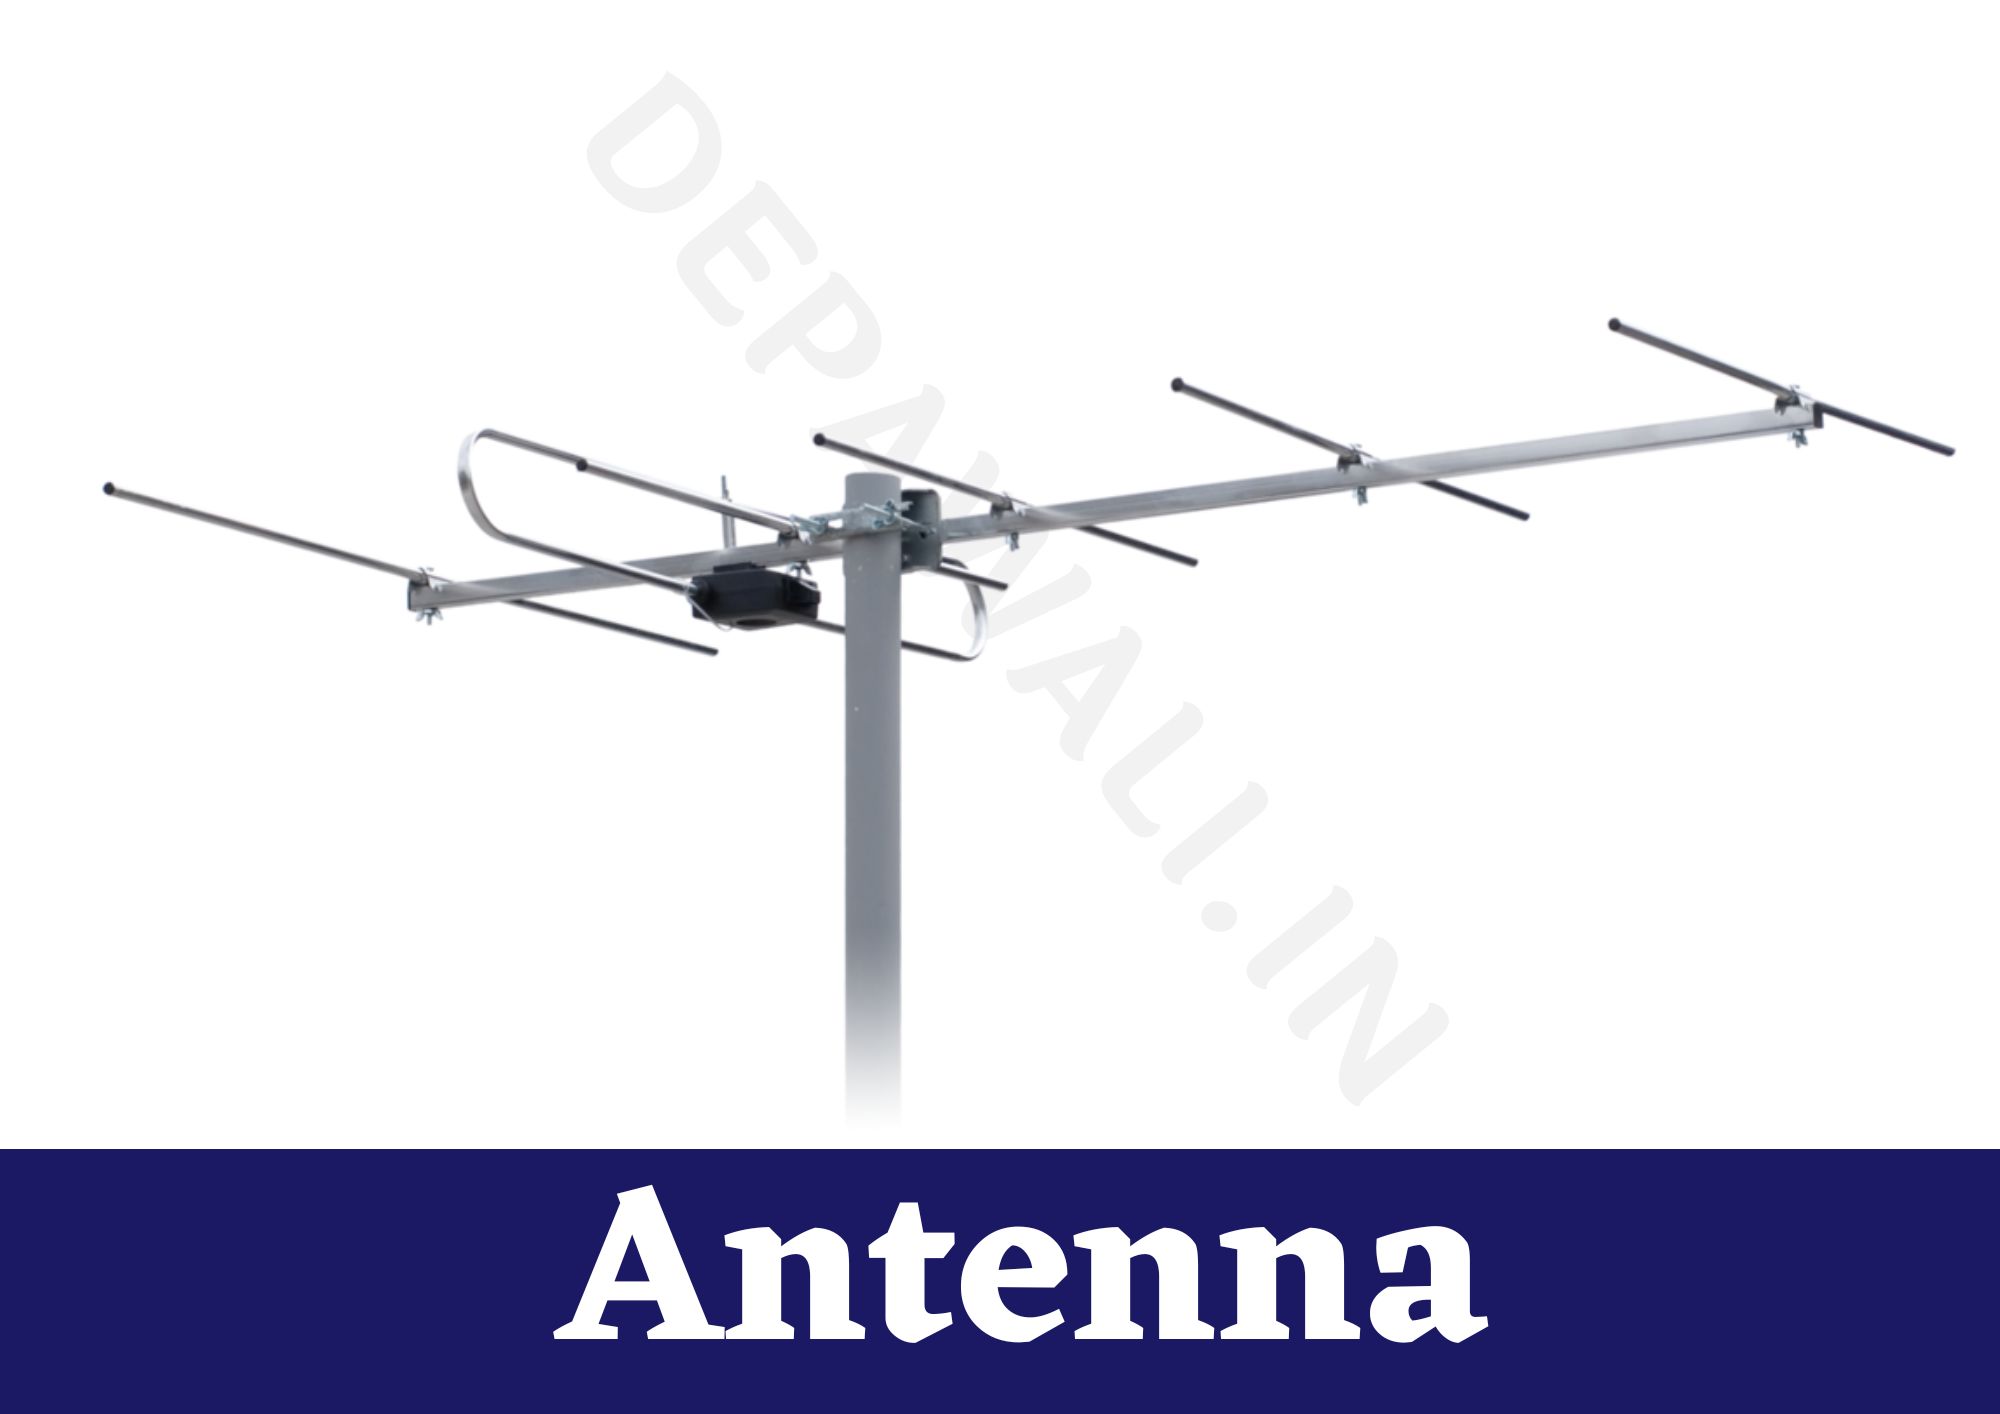 एंटीना क्या है, इसके प्रकार और कार्य - (Antenna In Hindi)